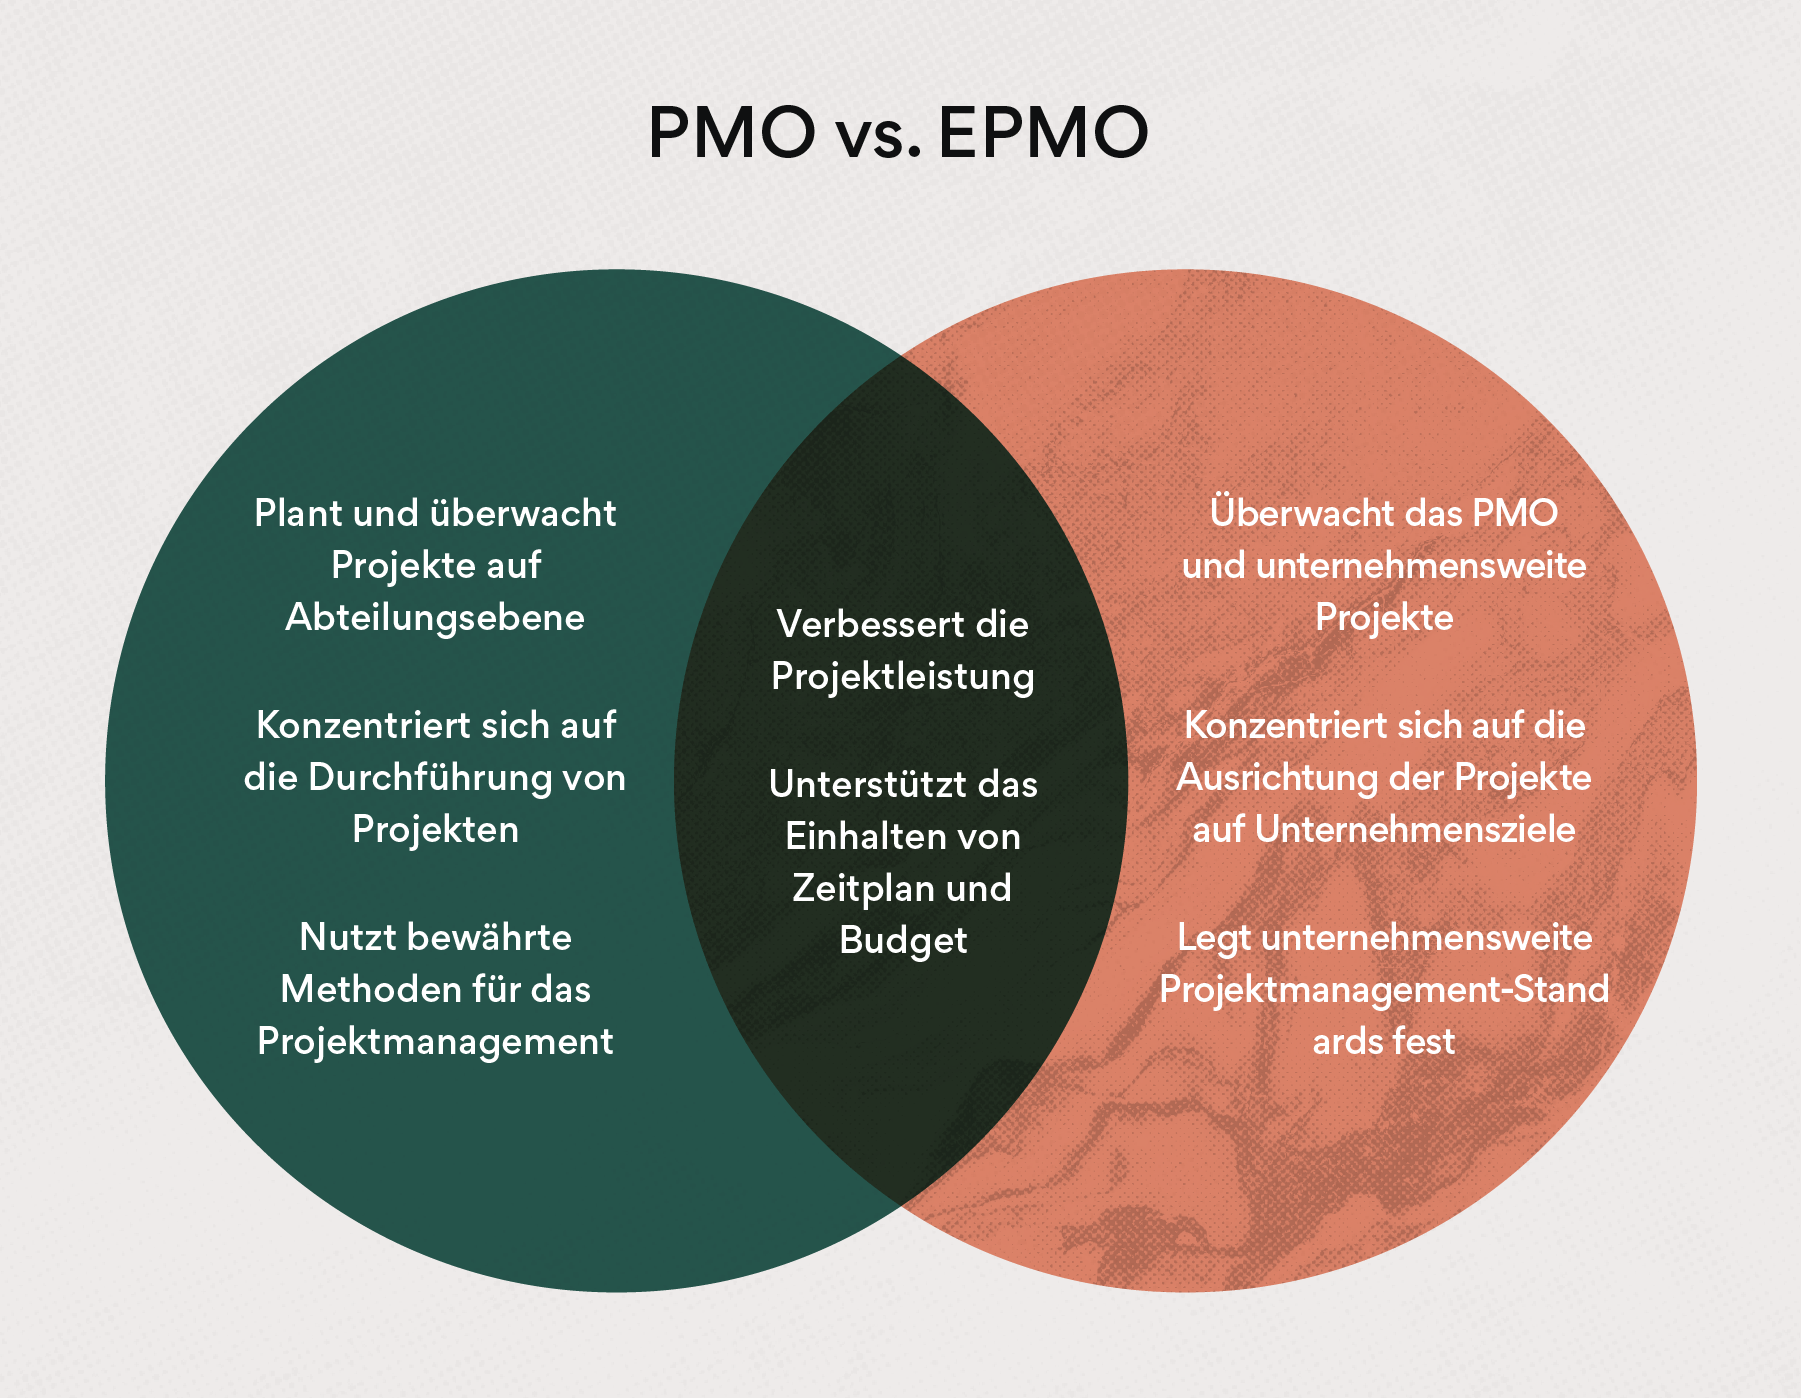 EPMO vs. PMO